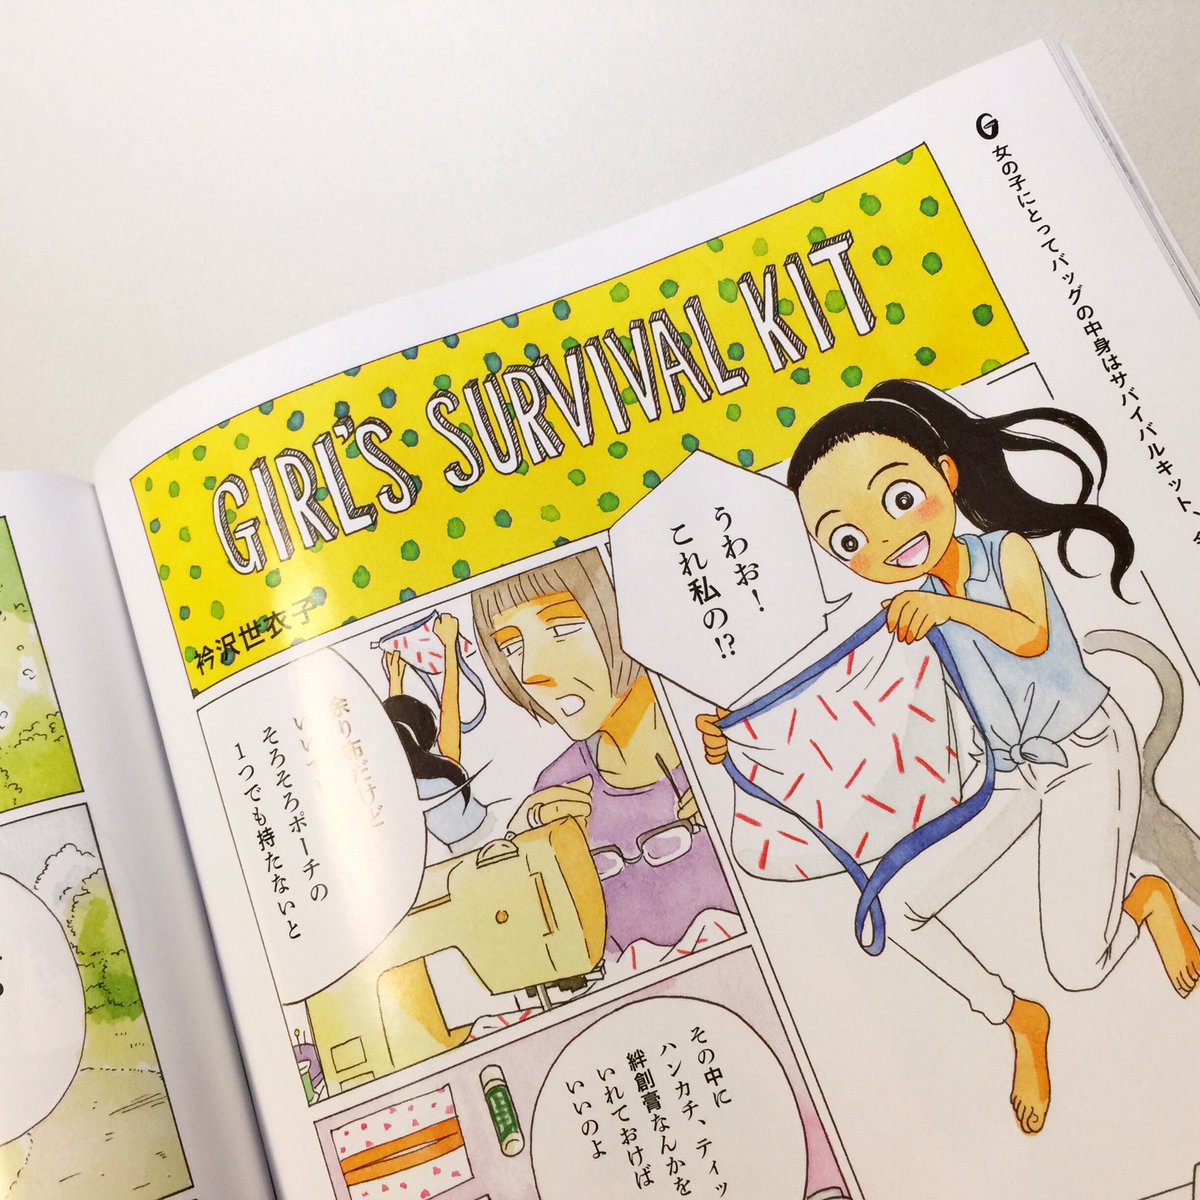 【読み切り】発売中のGINZA9月号にカラー漫画を描きました。特集「レディの持ち物」のイメージから、レディ未満の女の子のお話です。 